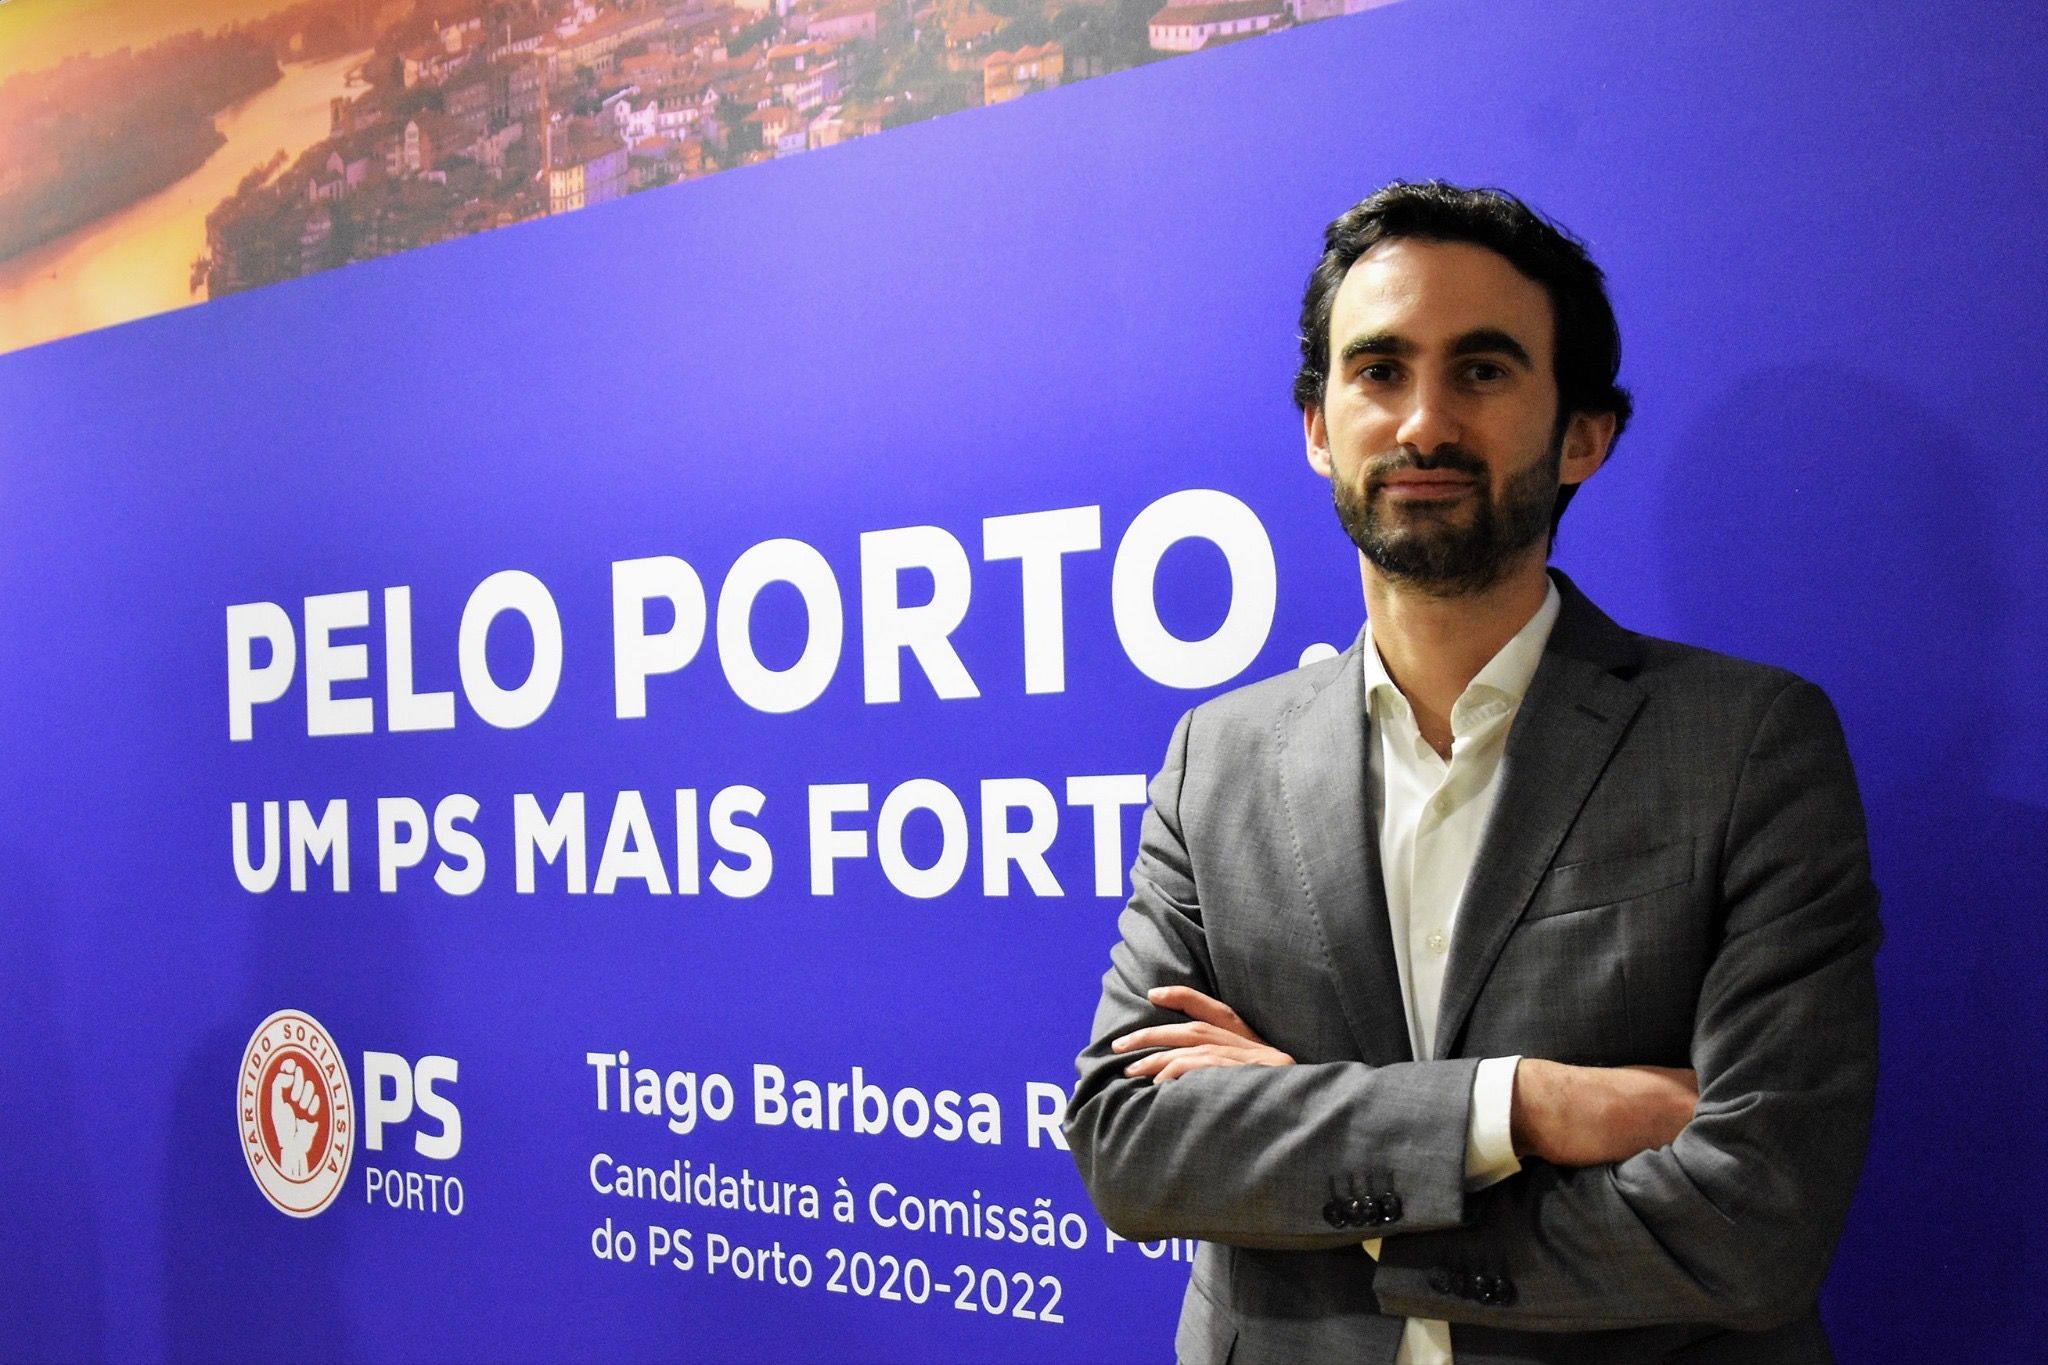 Tiago Barbosa Ribeiro